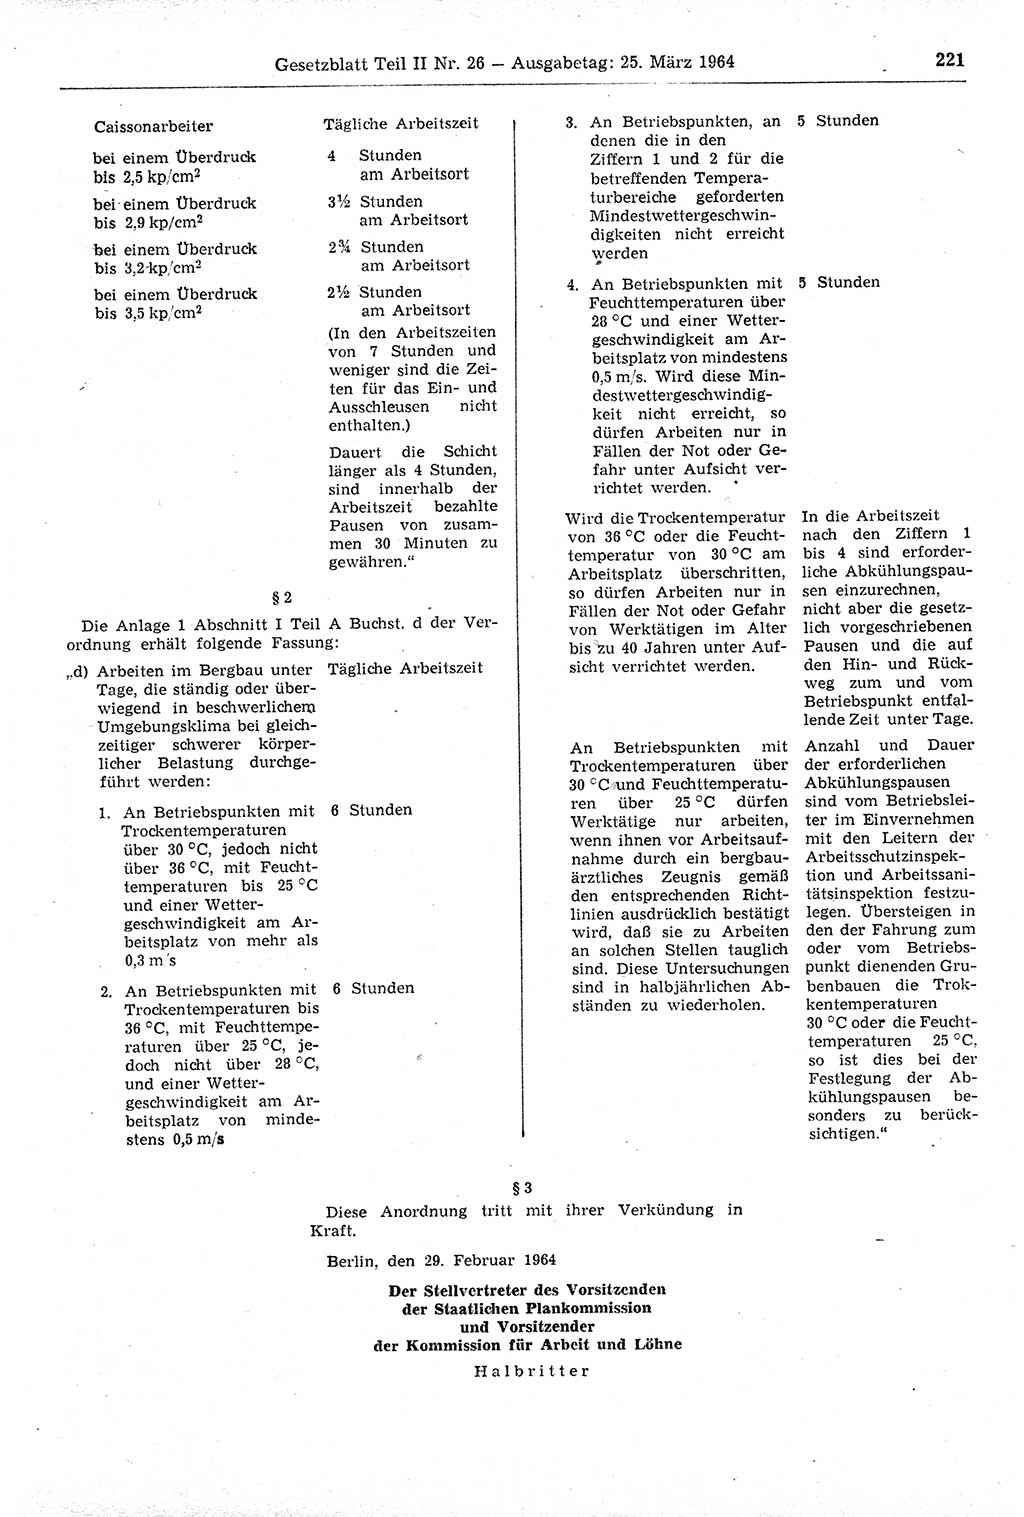 Gesetzblatt (GBl.) der Deutschen Demokratischen Republik (DDR) Teil ⅠⅠ 1964, Seite 221 (GBl. DDR ⅠⅠ 1964, S. 221)